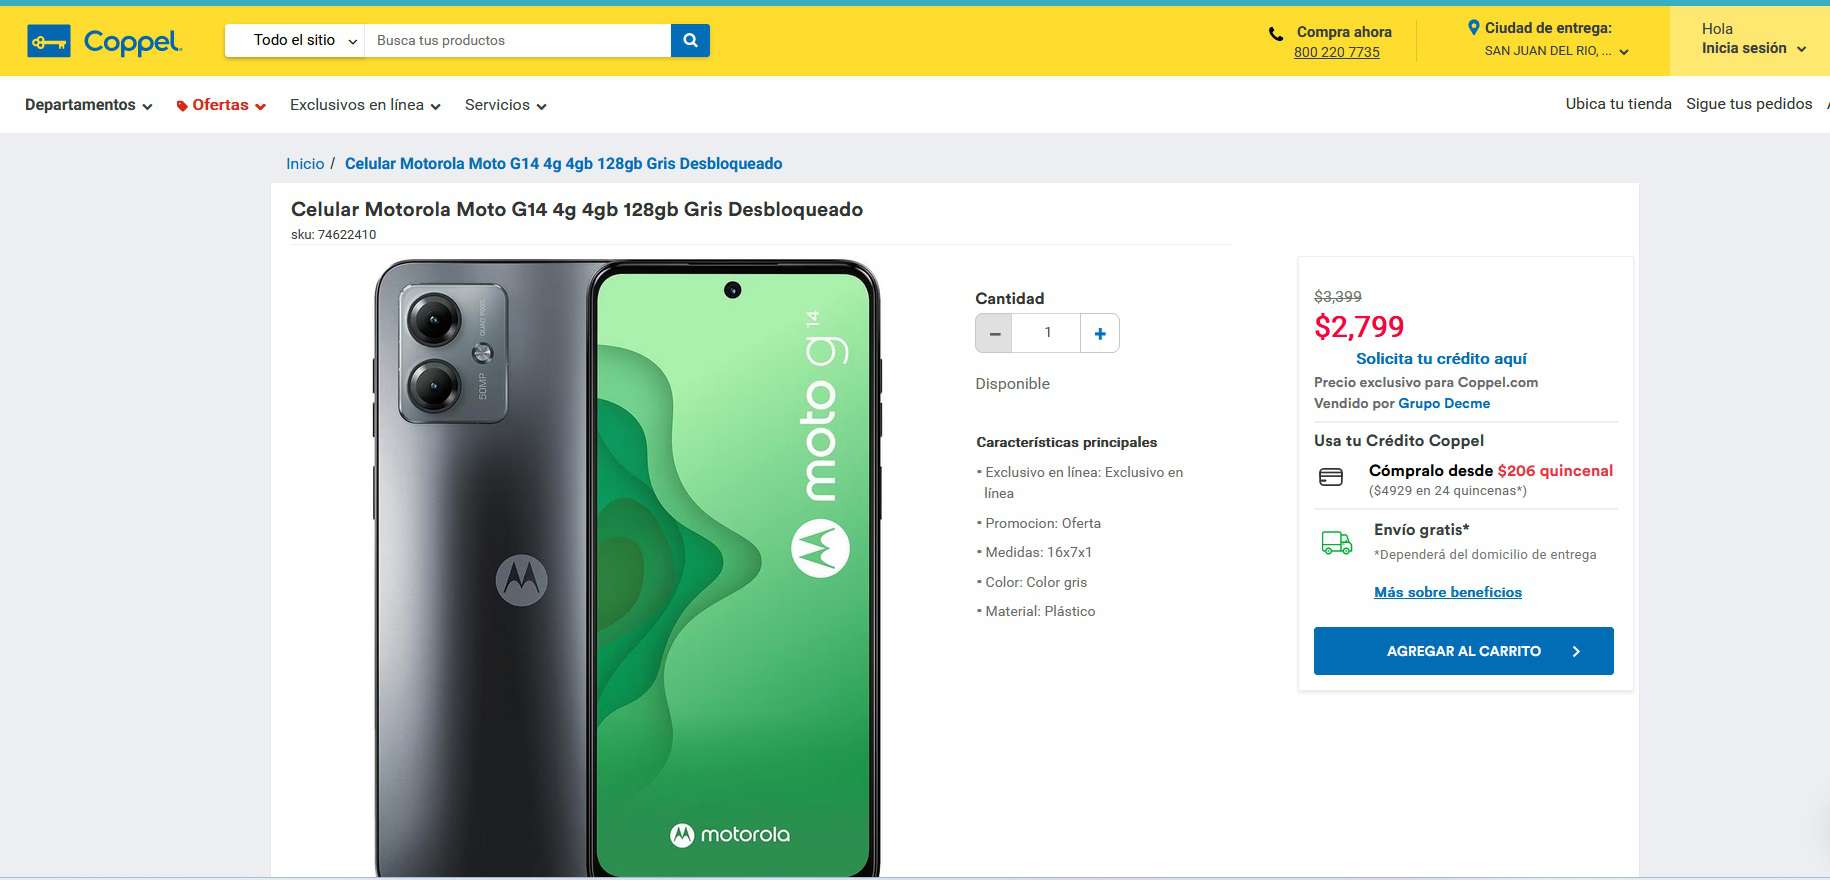 Precio del smartphone Motorola Moto G14 en Coppel